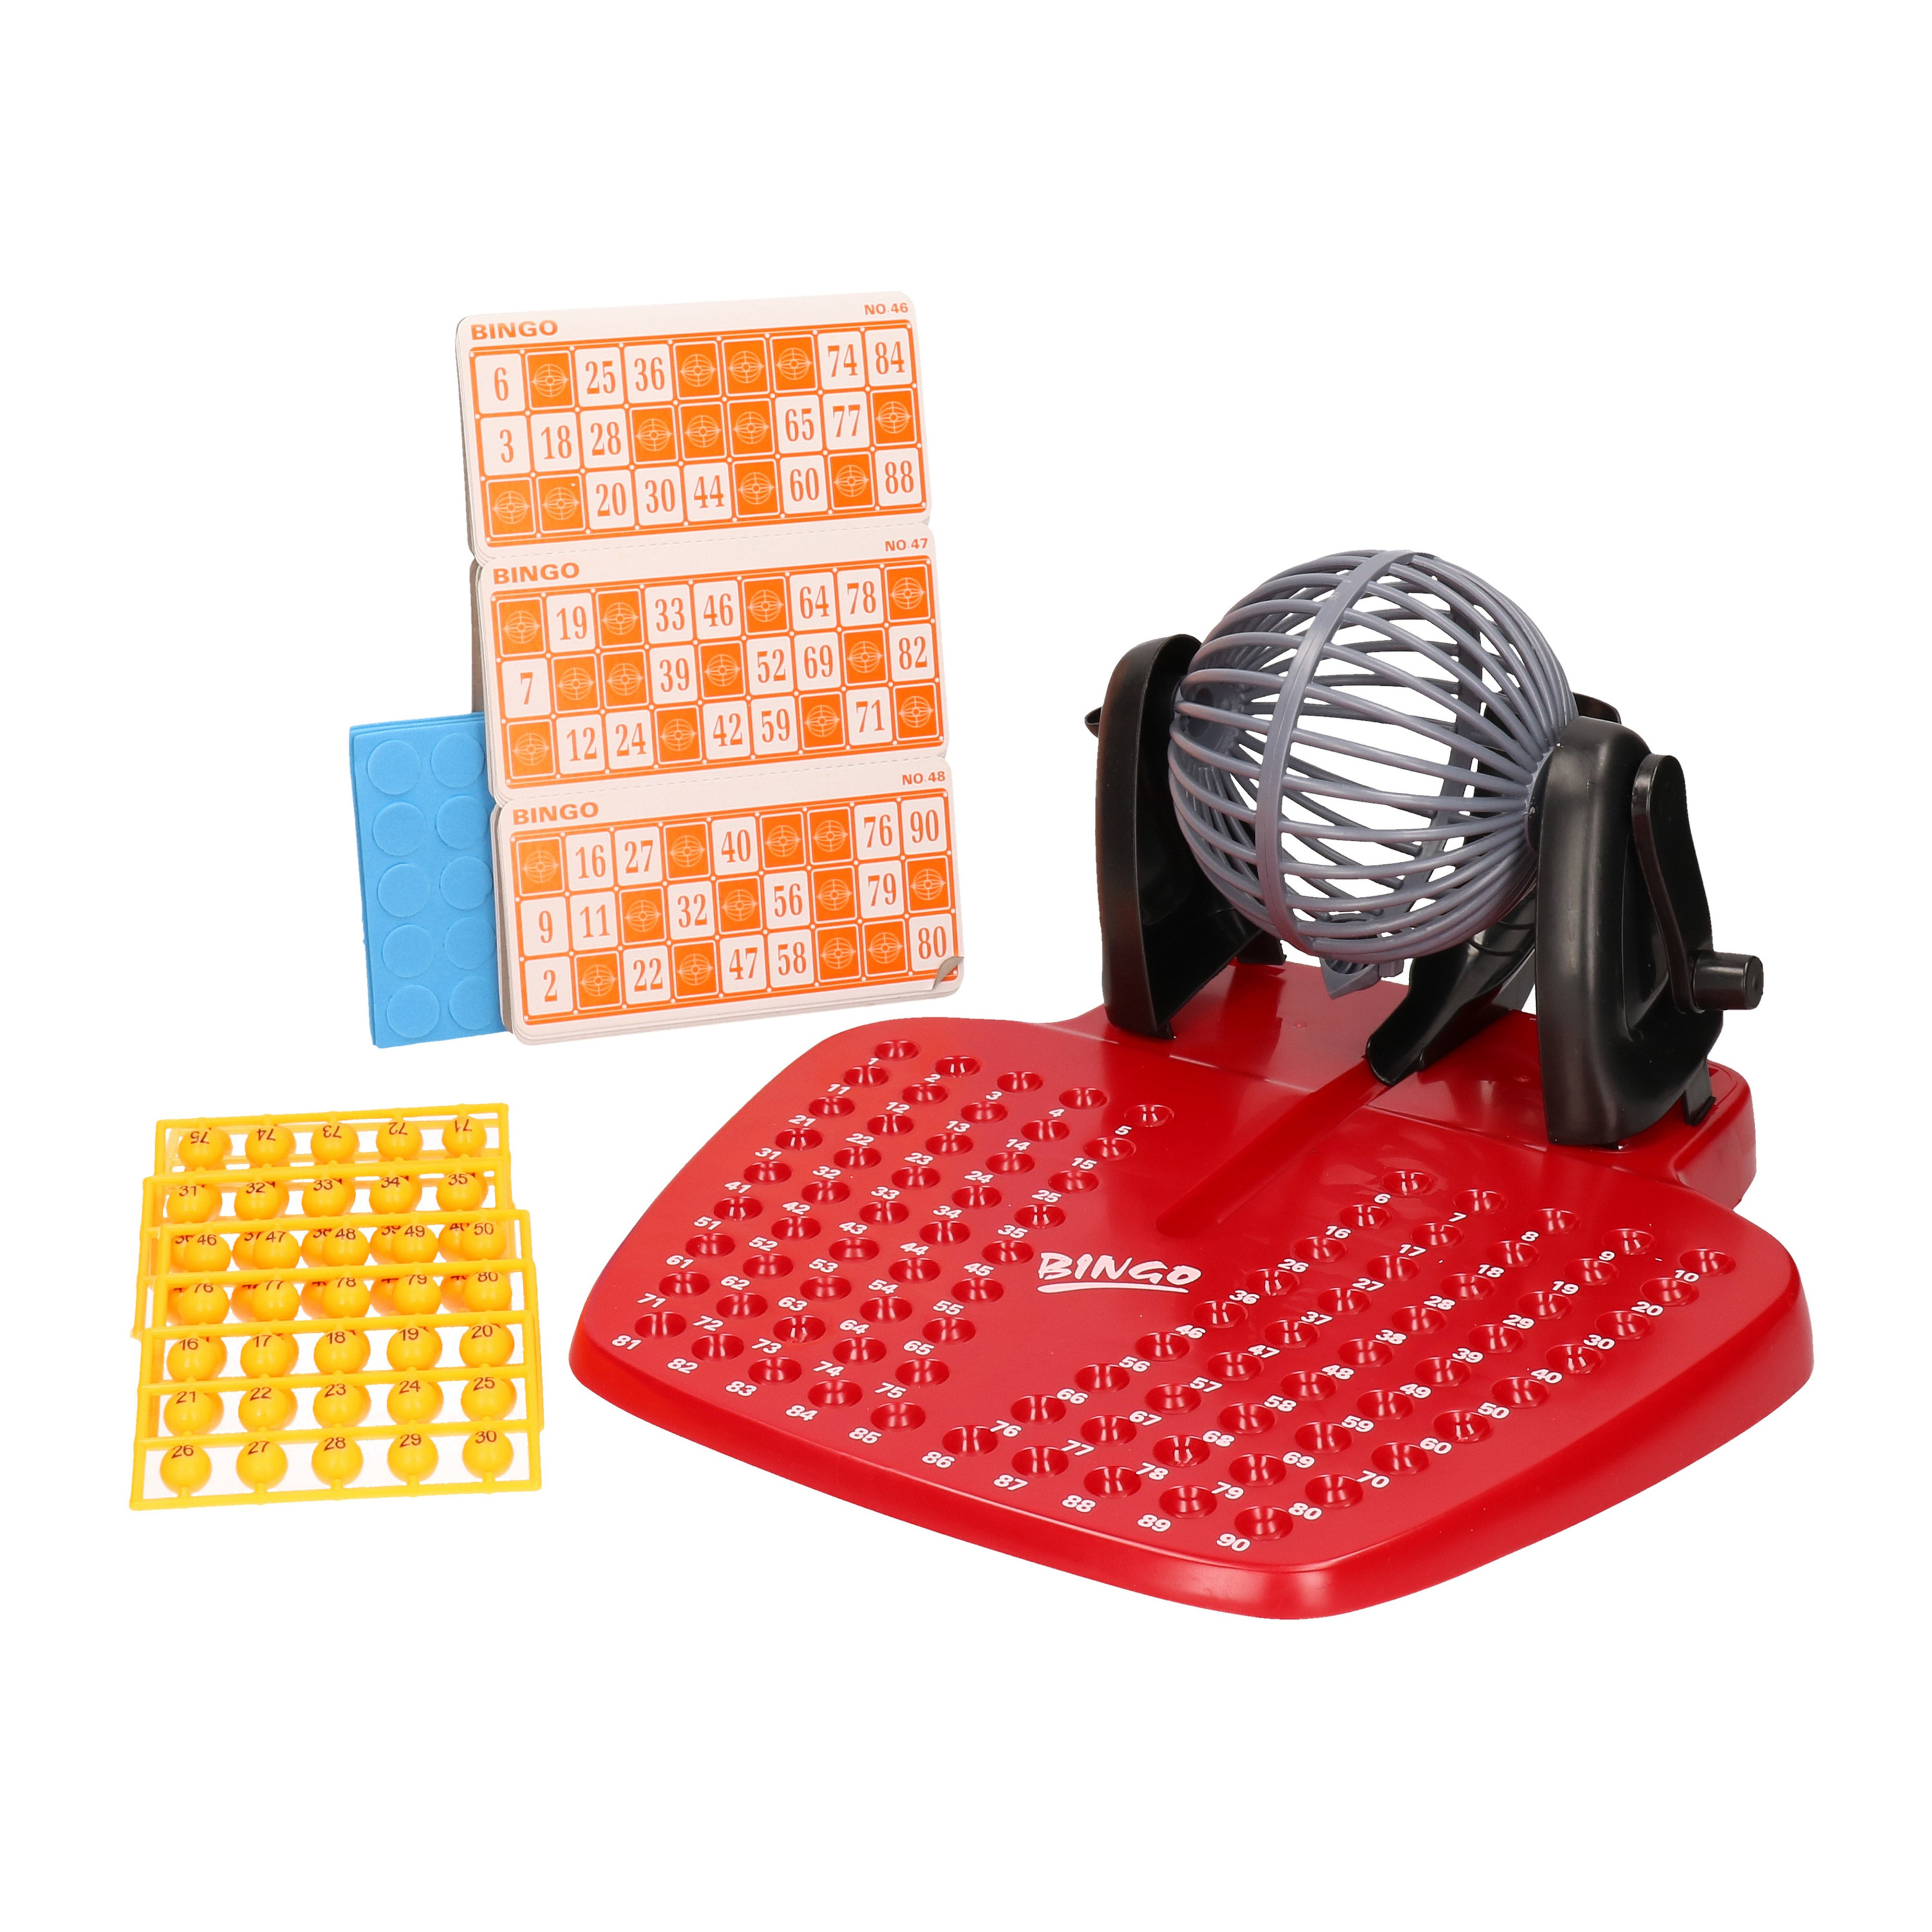 Bingo spel rood/oranje complete set nummers 1-90 met molen en bingokaarten